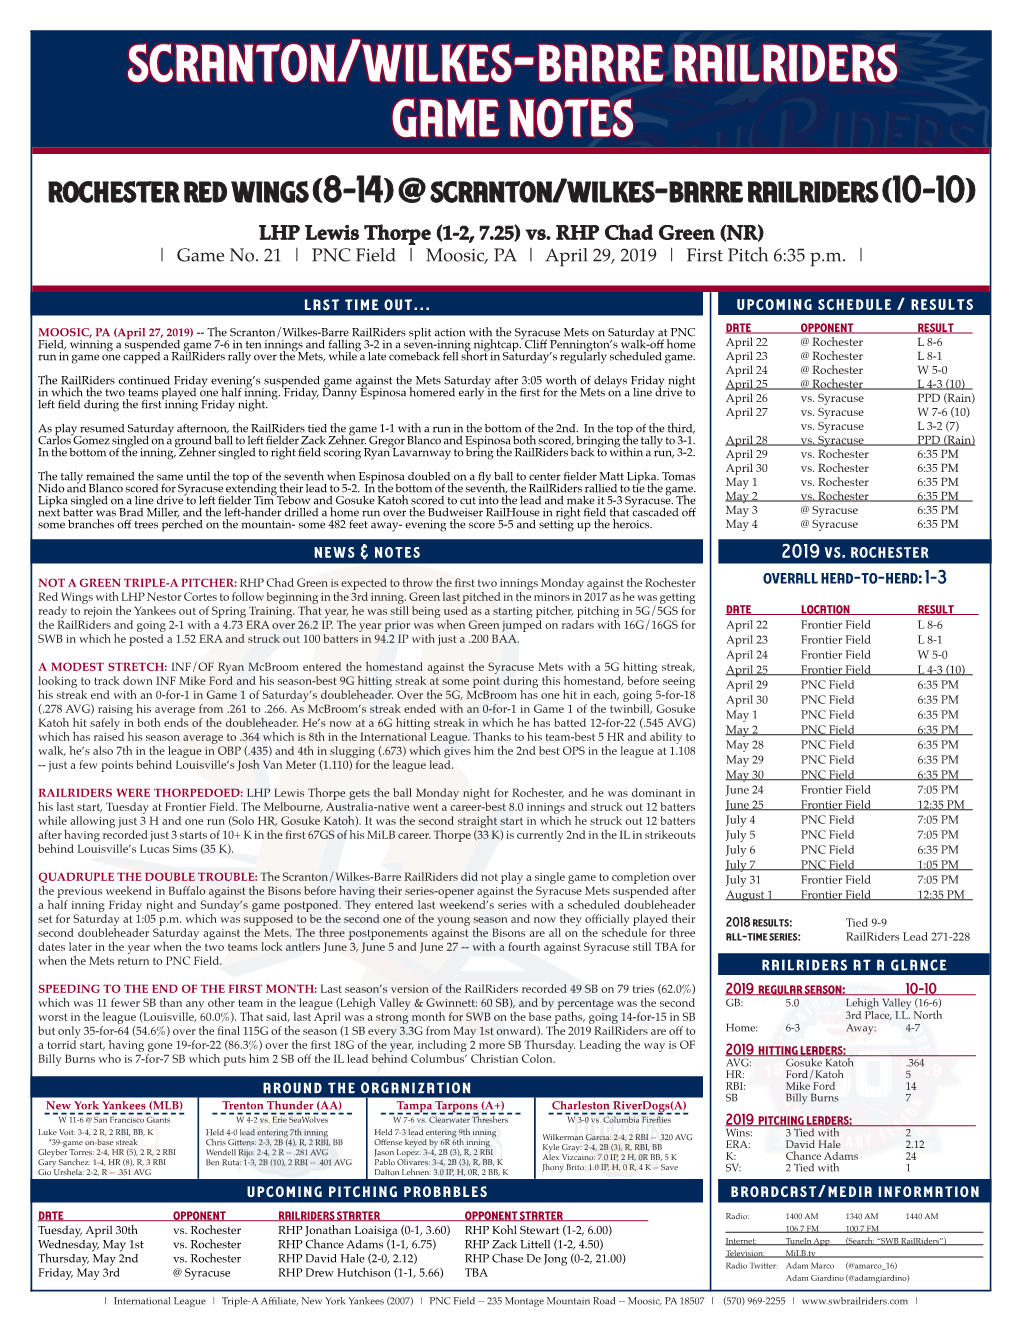 Scranton/Wilkes-Barre Railriders Game Notes Rochester Red Wings (8-14) @ Scranton/Wilkes-Barre Railriders (10-10)